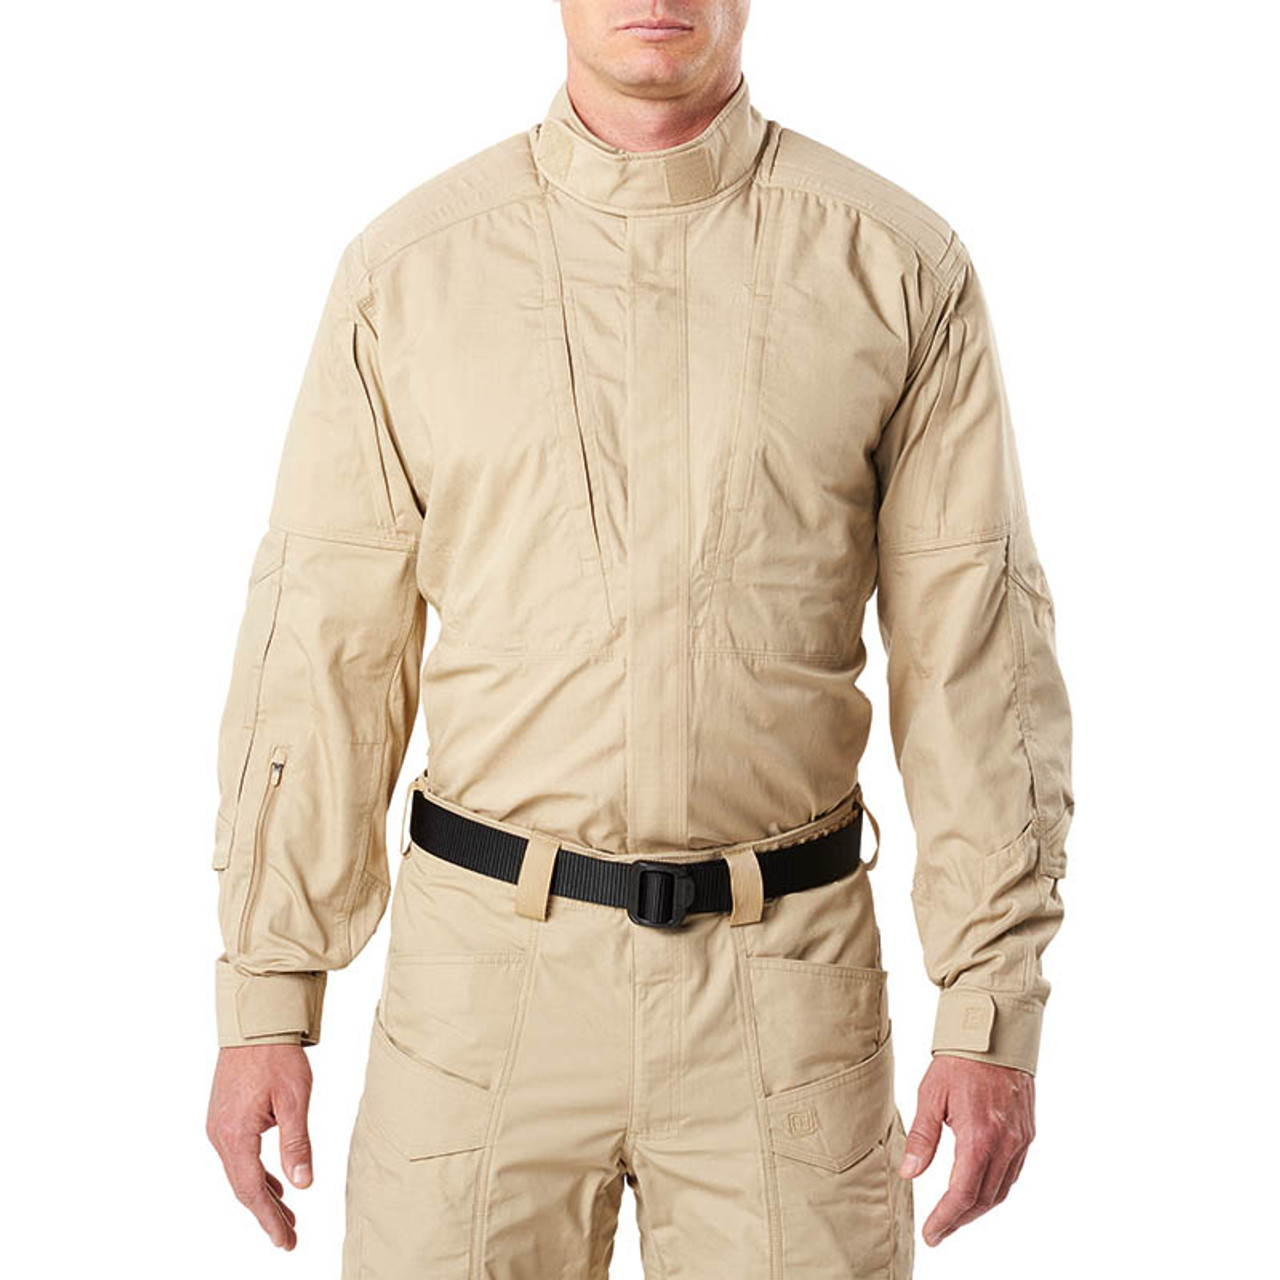 XPRT Tactical Uniform